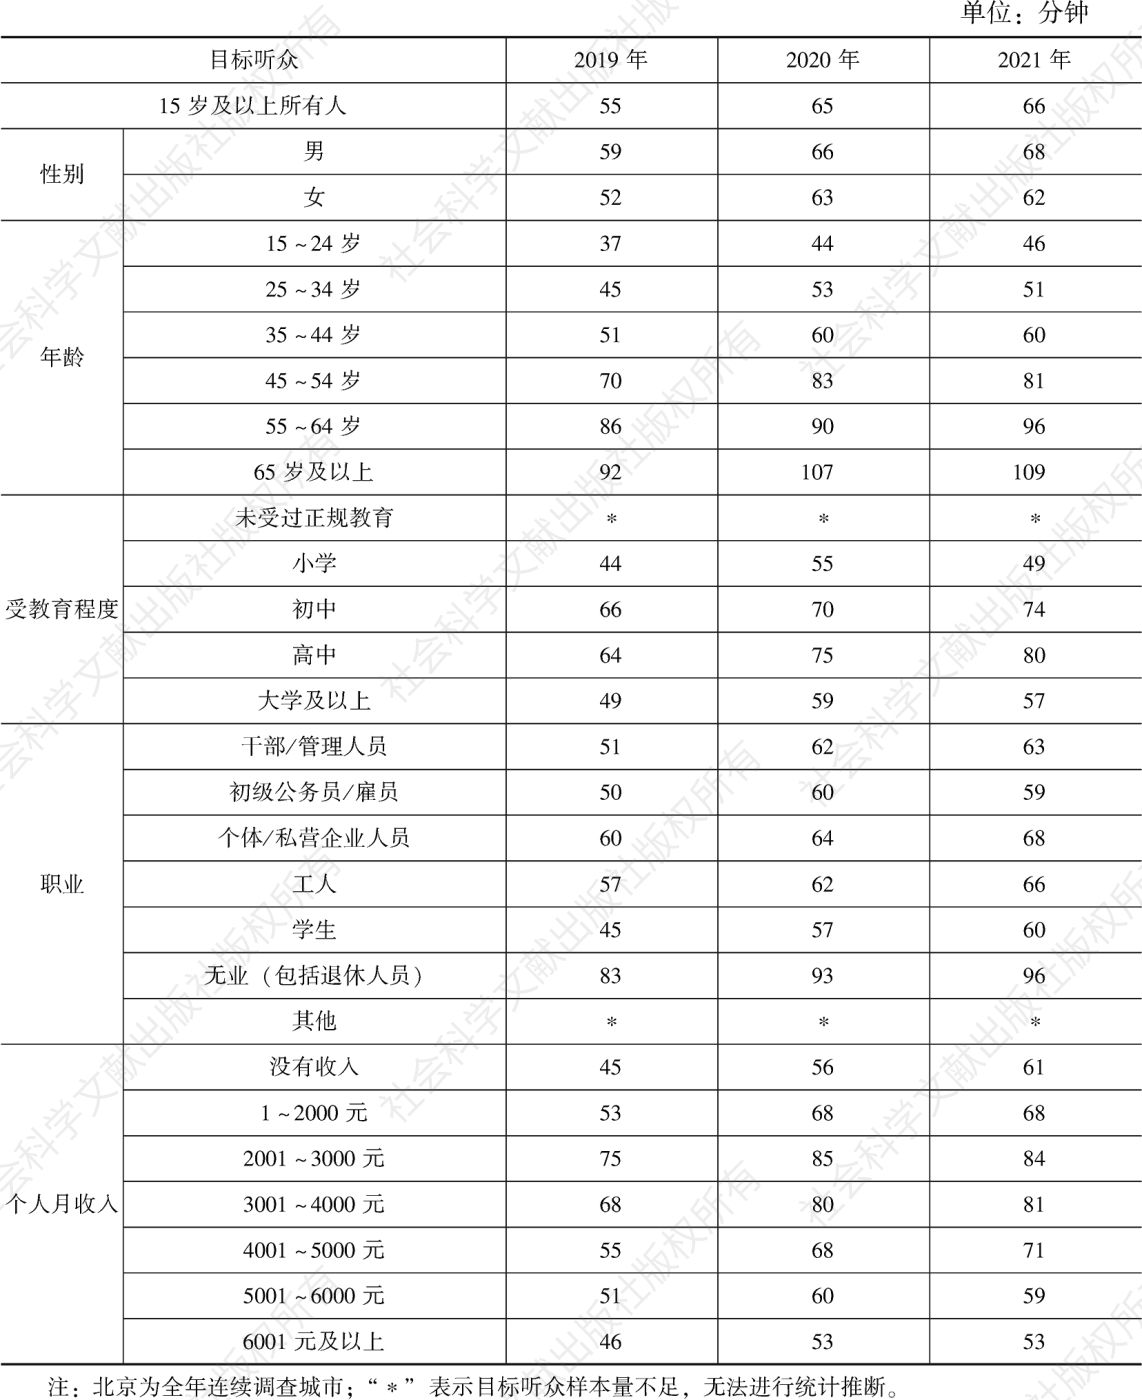 表4.1.1 2019～2021年北京各目标听众人均收听时间